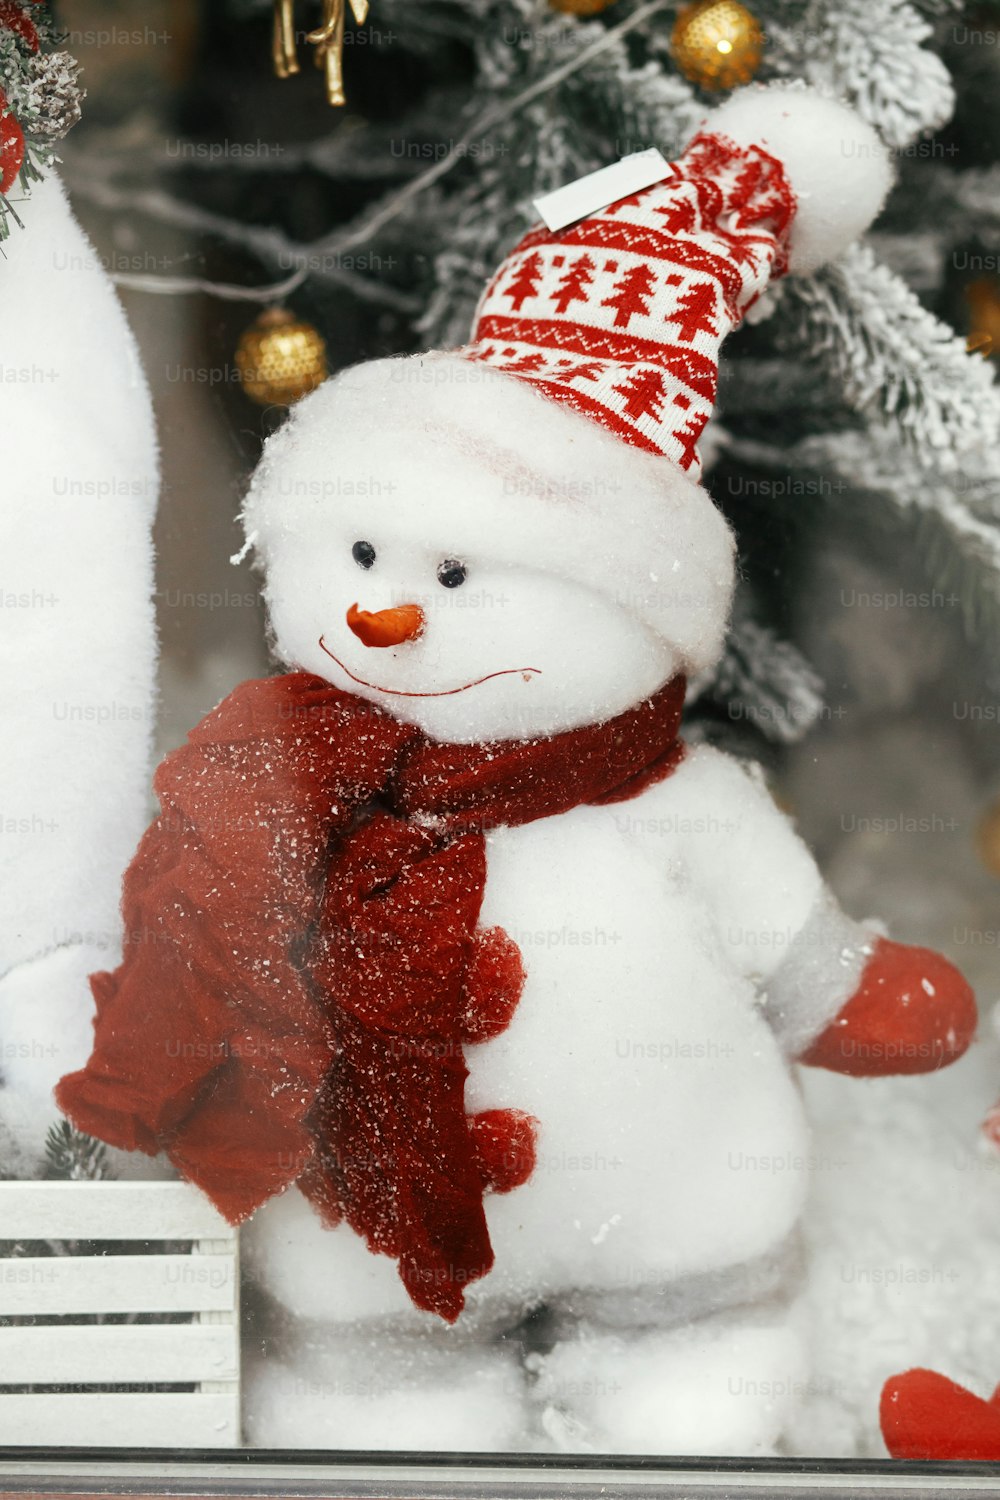 Elegante boneco de neve bonito no chapéu e com brinquedo cachecol sob a árvore de Natal moderna. Decoração festiva de Natal para férias de inverno na rua da cidade europeia. Feliz Natal!